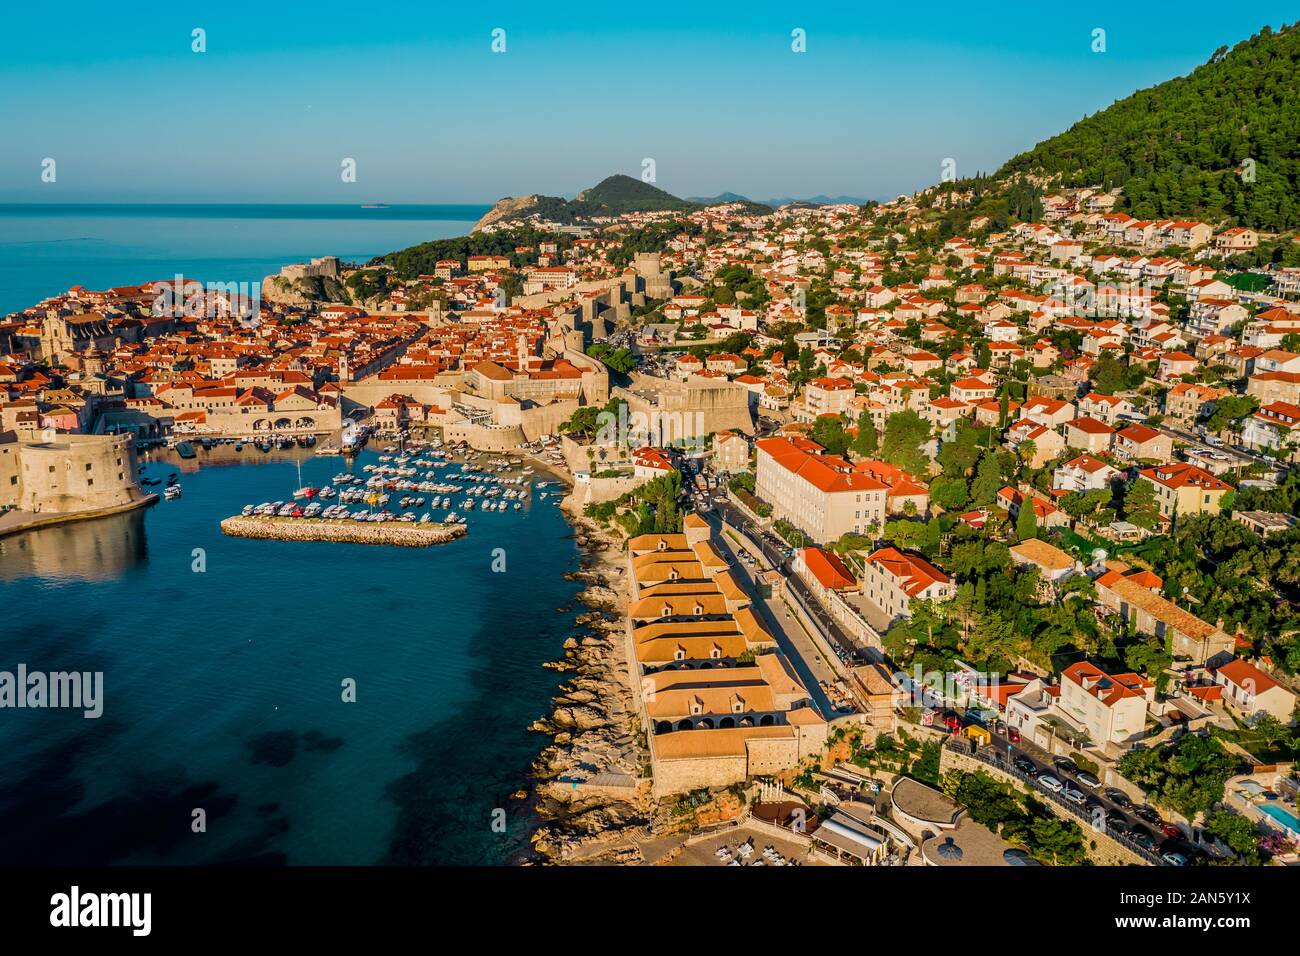 Vue aérienne sur la côte croate révélant la vieille ville de Dubrovnik et les murs de la ville.vieille ville européenne et mer Adriatique.Banje plage à Dubrovnik, Da Banque D'Images